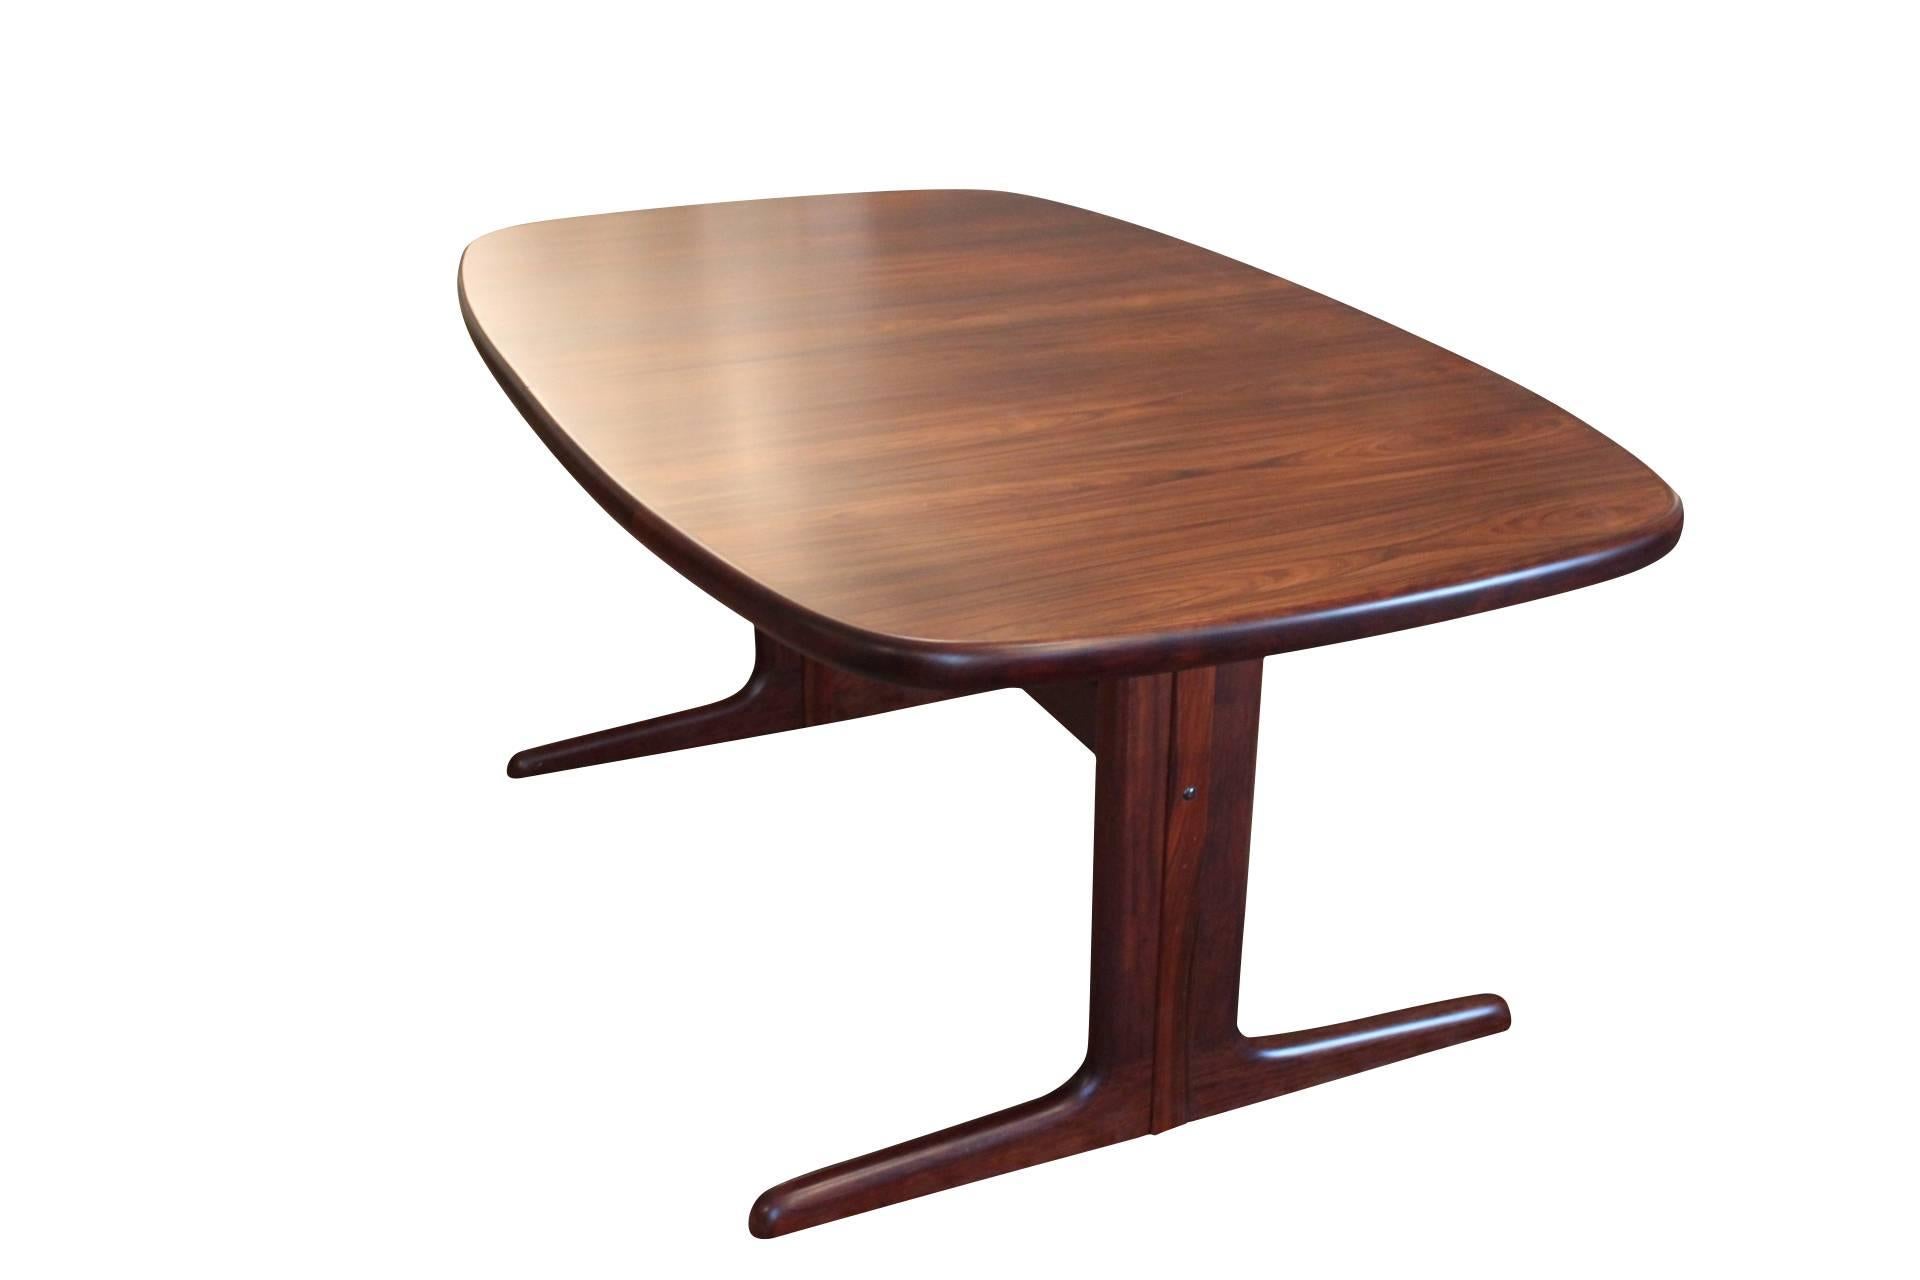 Table de salle à manger no. 74 de Skovby furniture factory en forme d'ellipse classique avec deux rallonges cachées sous le plateau. La table est en bois de rose et peut accueillir de 6 à 12 personnes. La table est de conception danoise.